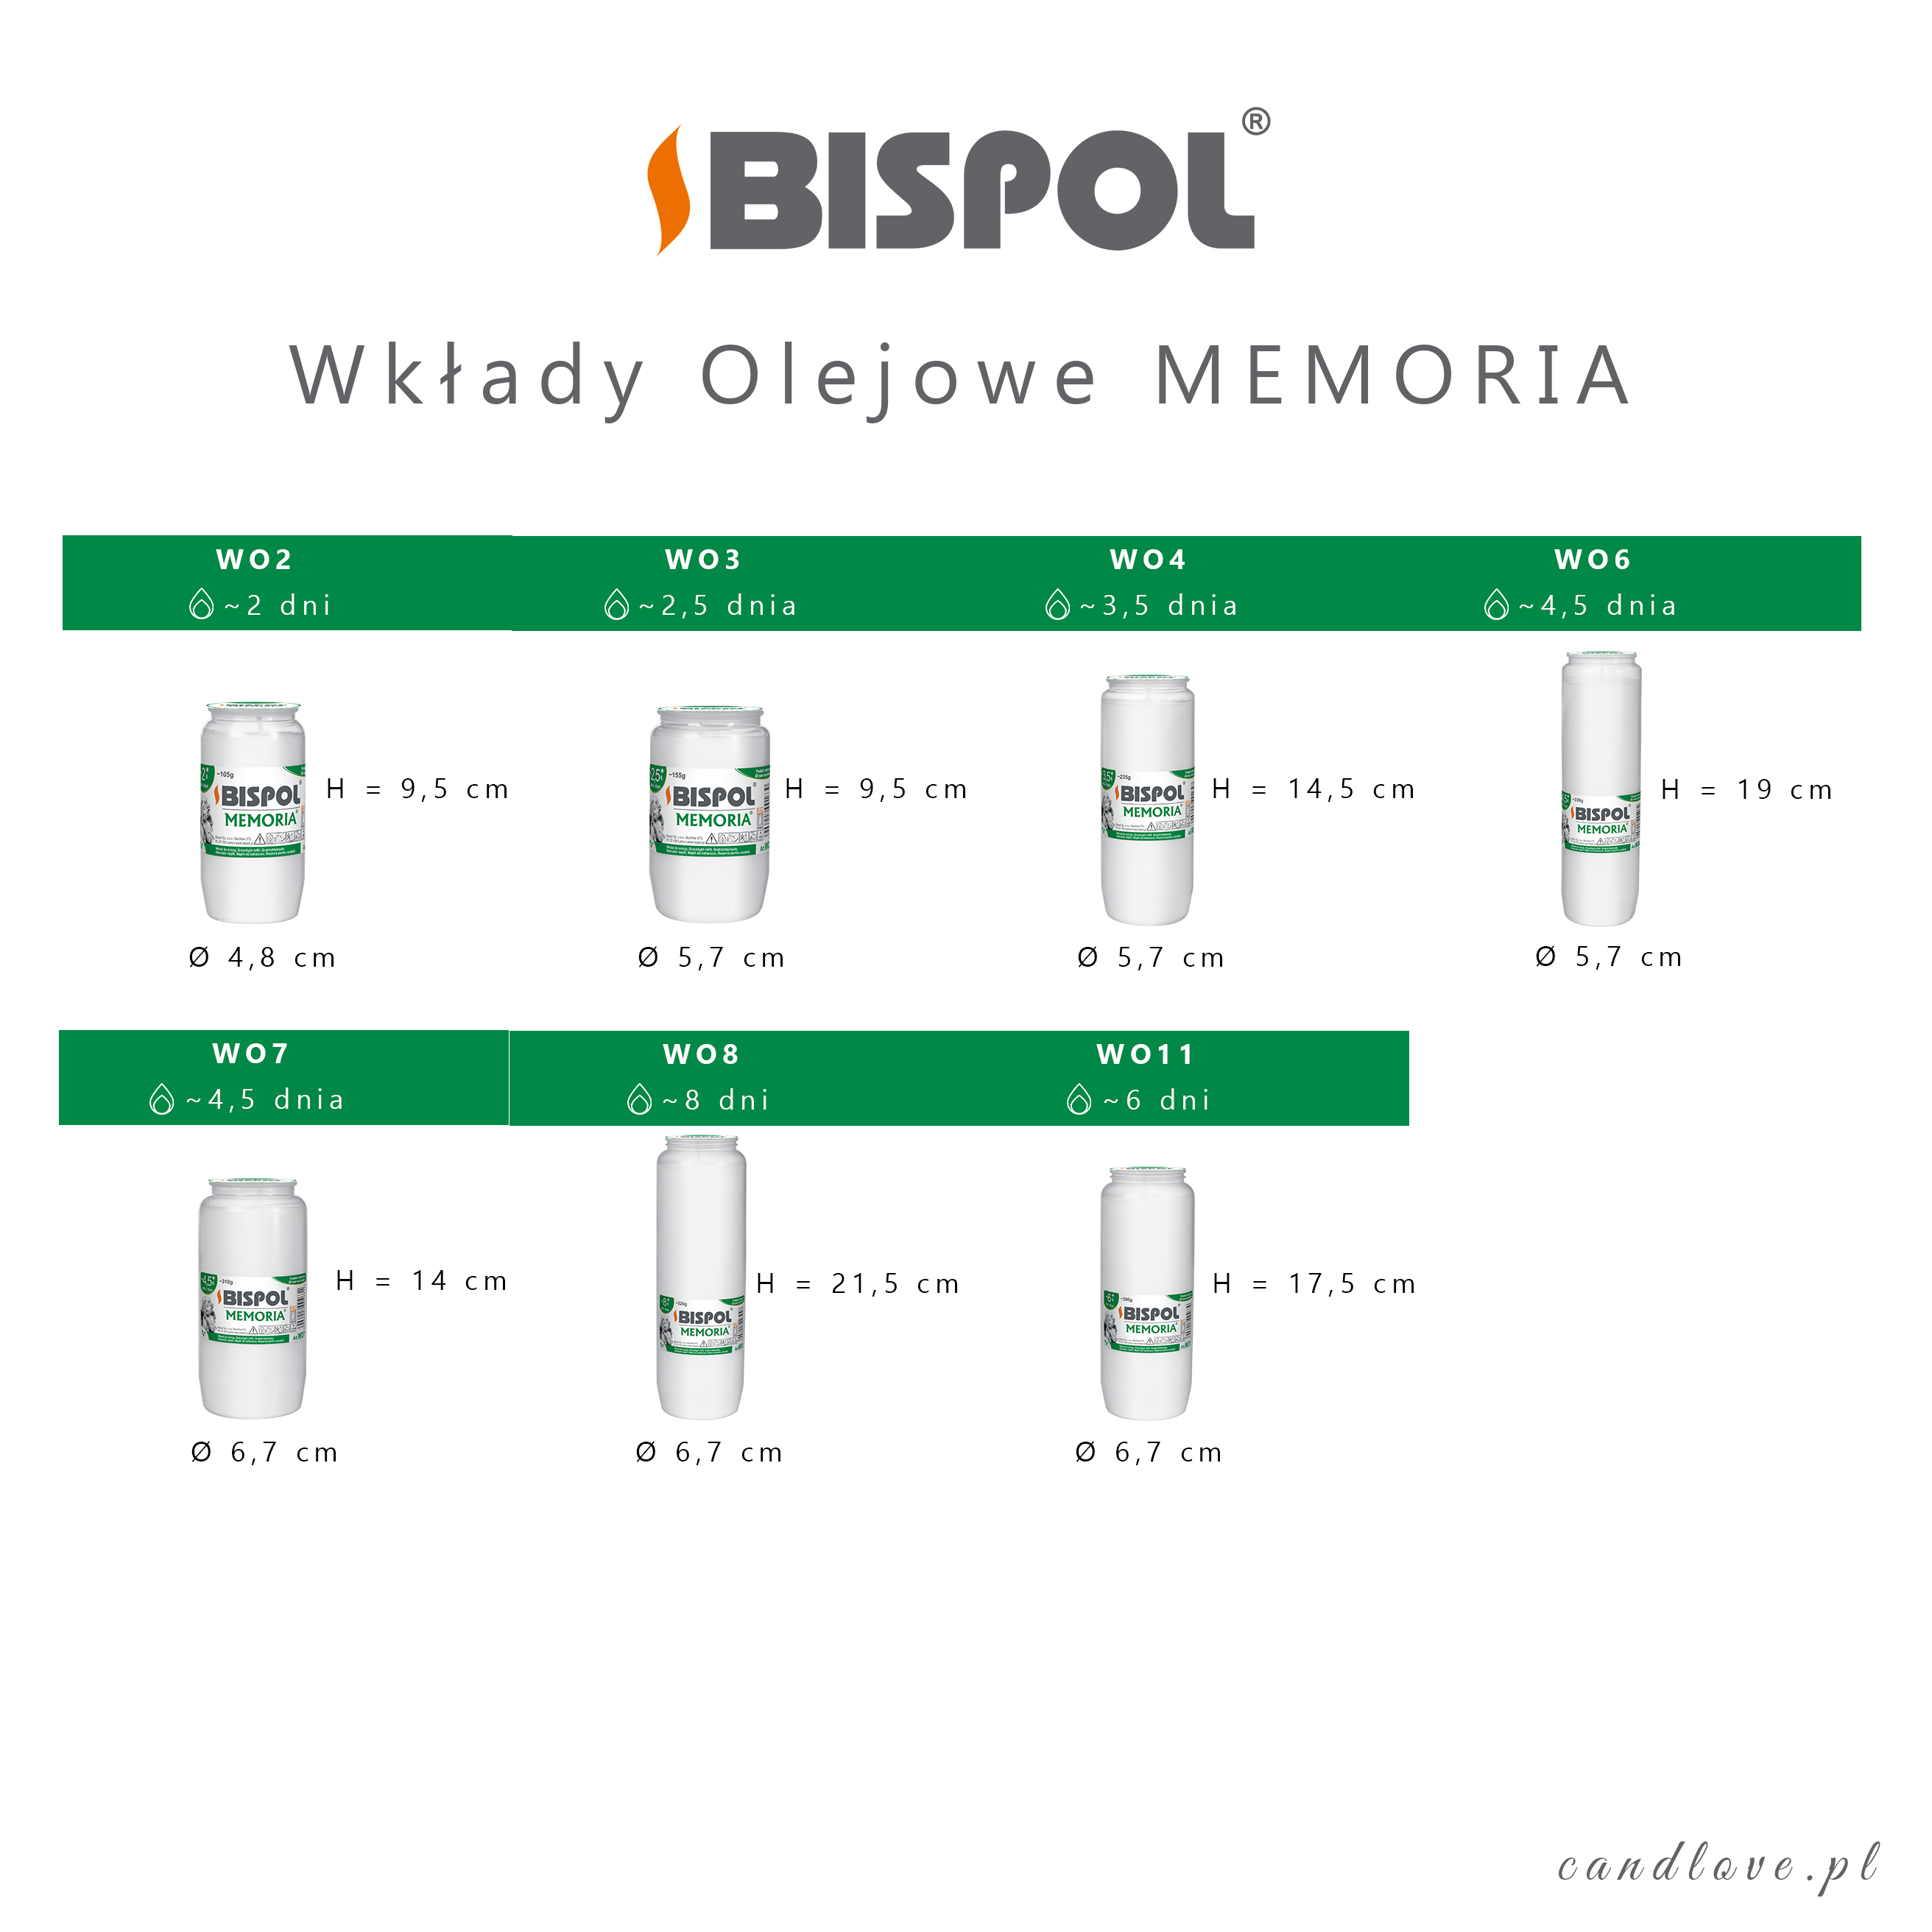 Wkłady-olejowe-bispol